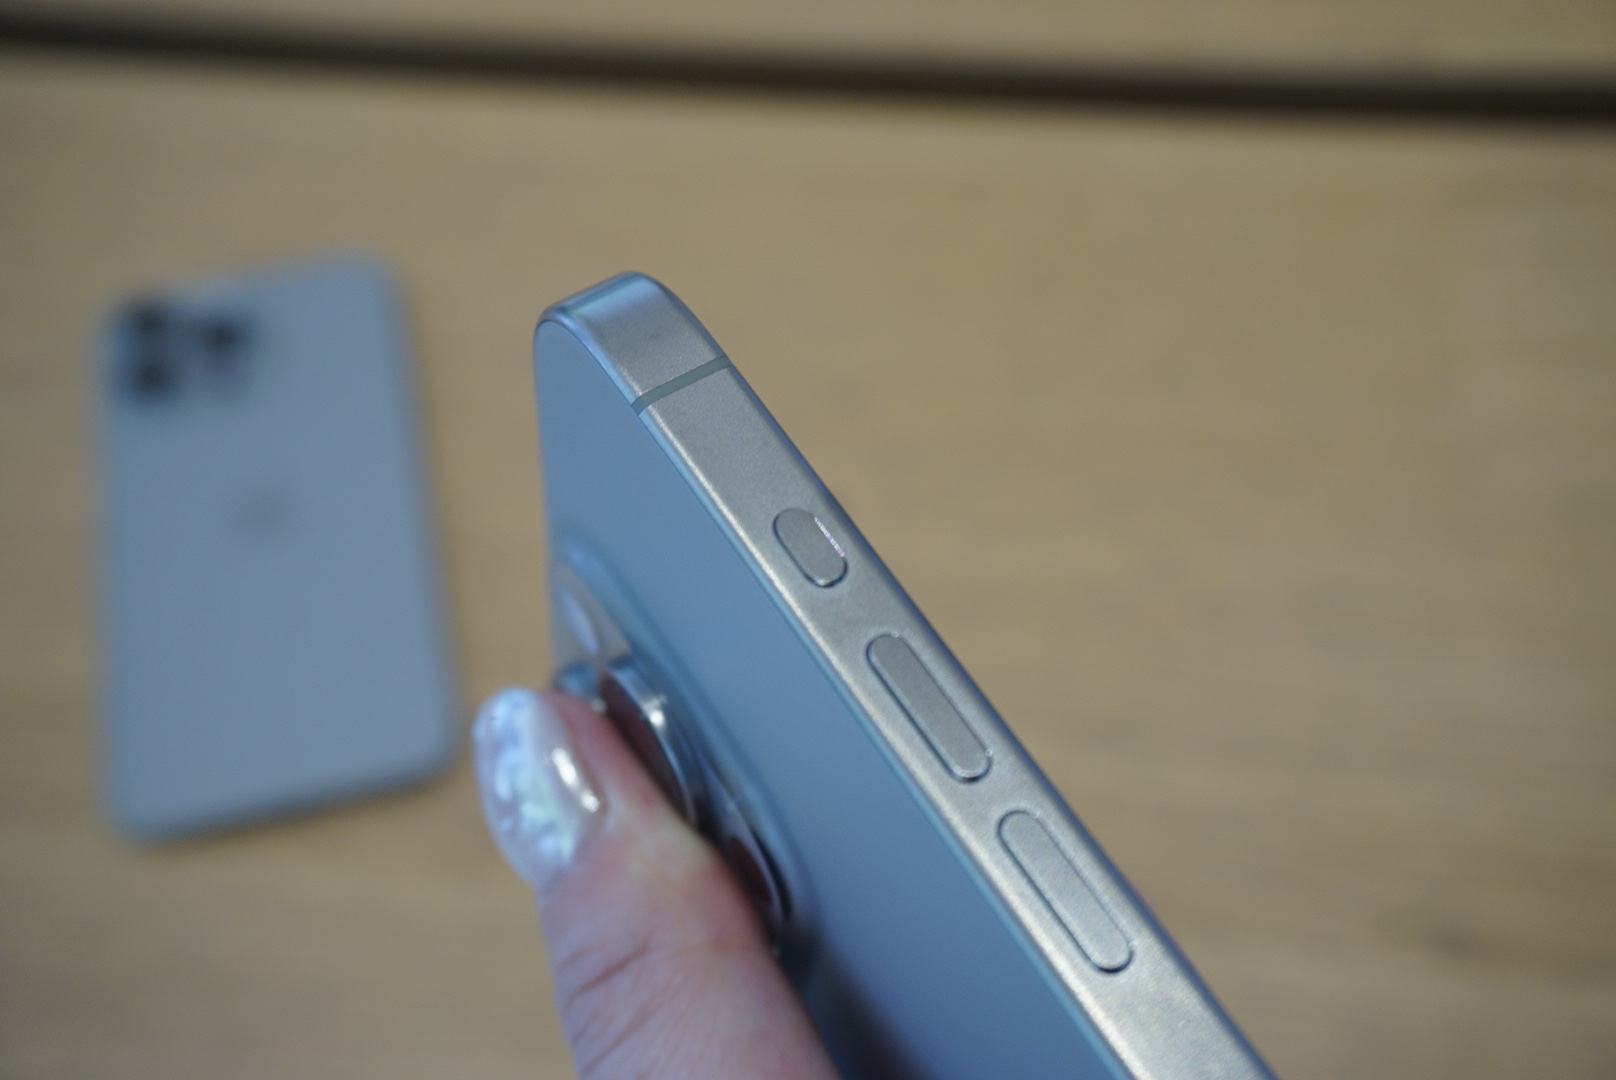  iPhone 15 Pro 最吸睛的亮點之一就是邊框採用航太等級鈦金屬設計了！使用鈦金屬材質除了更加堅固之外，重量也減輕許多，而側邊邊框的「髮絲紋」質感也很有工藝之美。